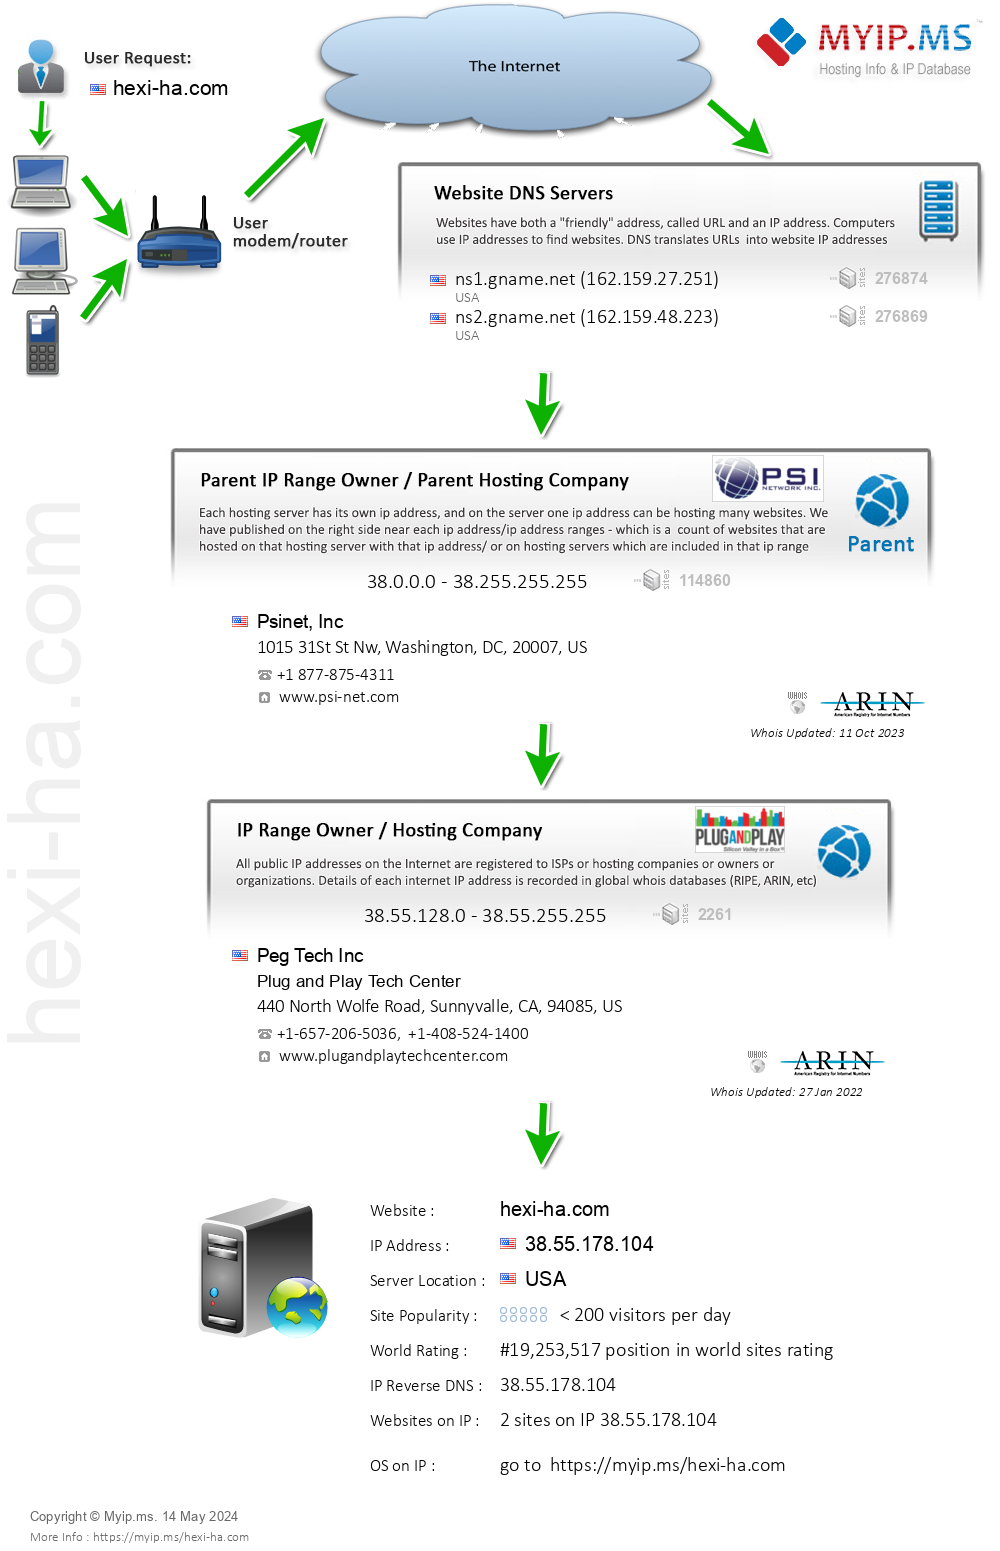 Hexi-ha.com - Website Hosting Visual IP Diagram